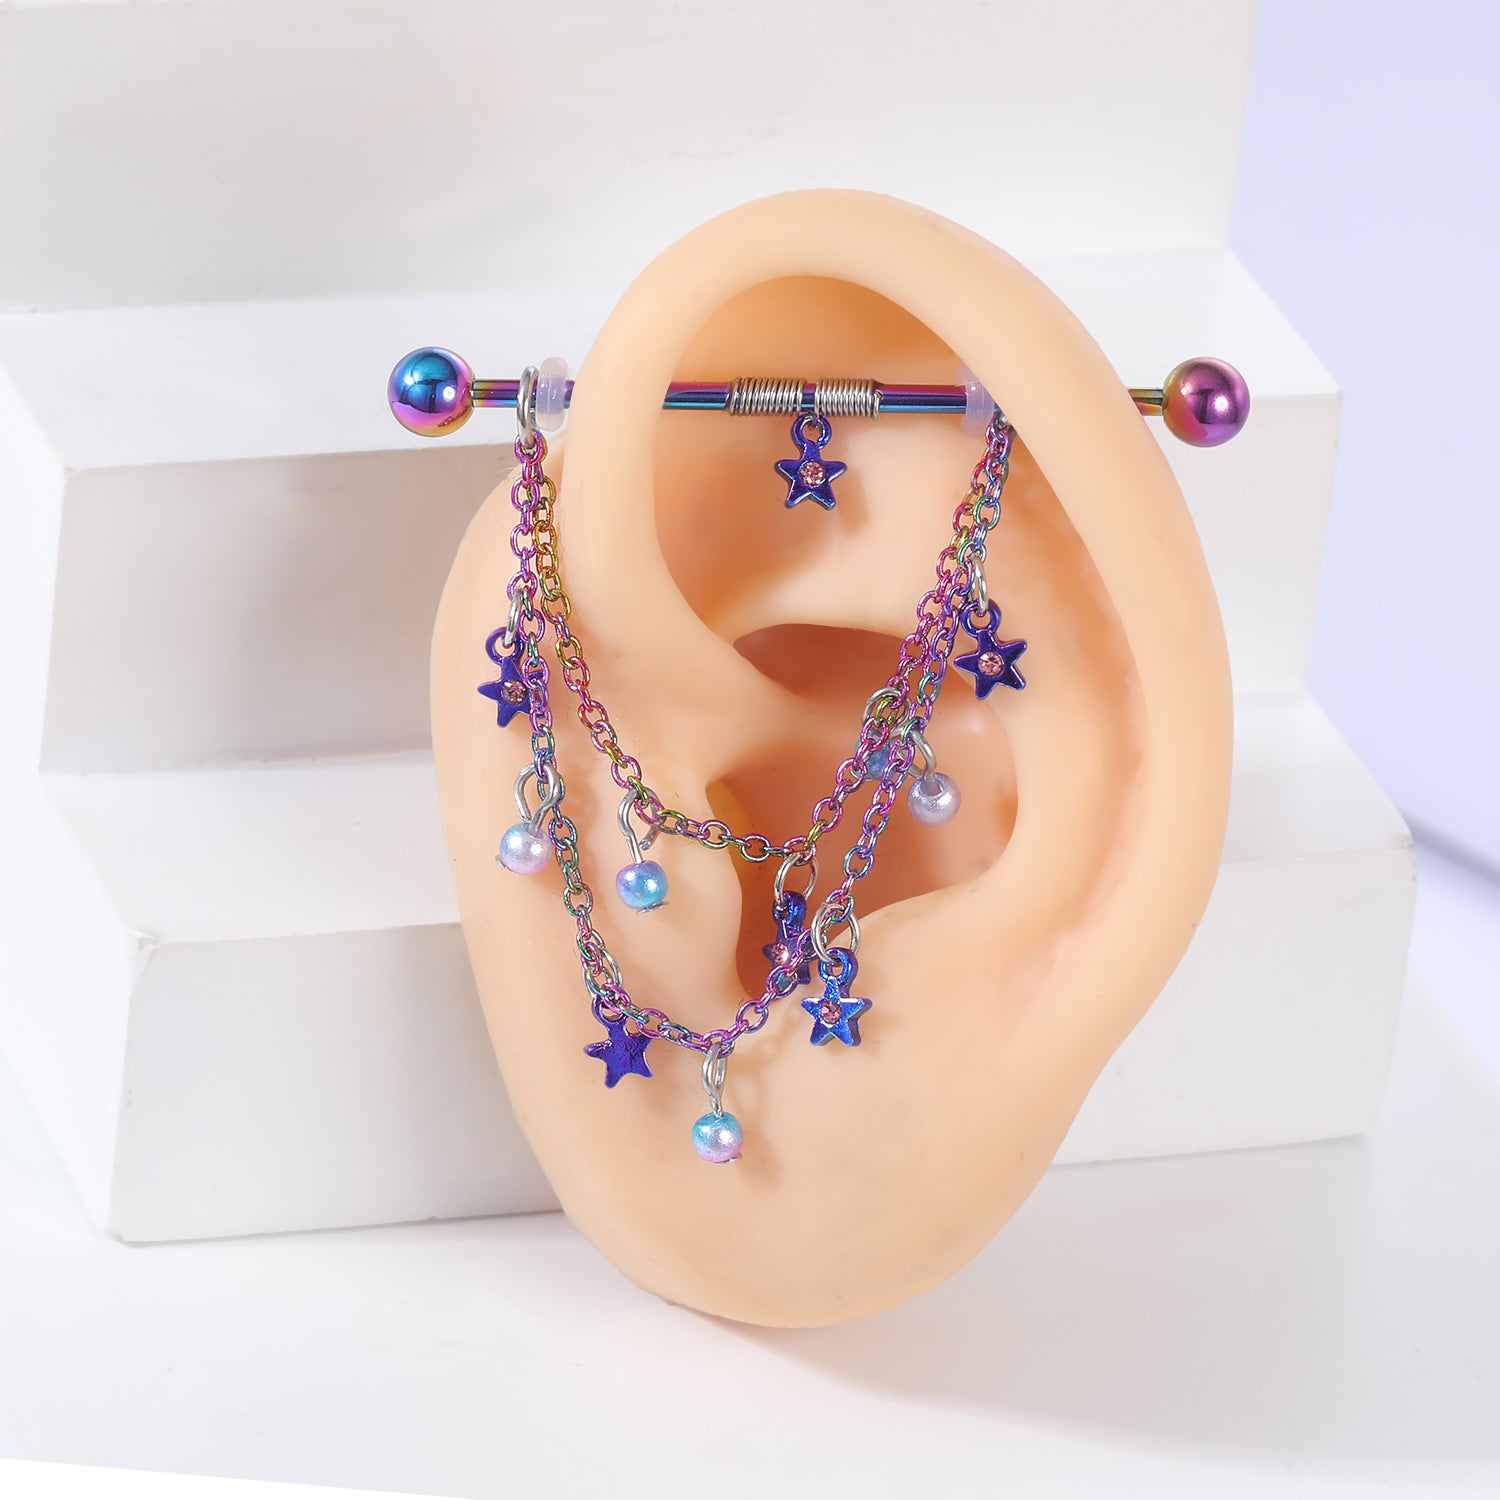 14g-star-dangle-industrial-barbell-earring-chain-ear-helix-piercing